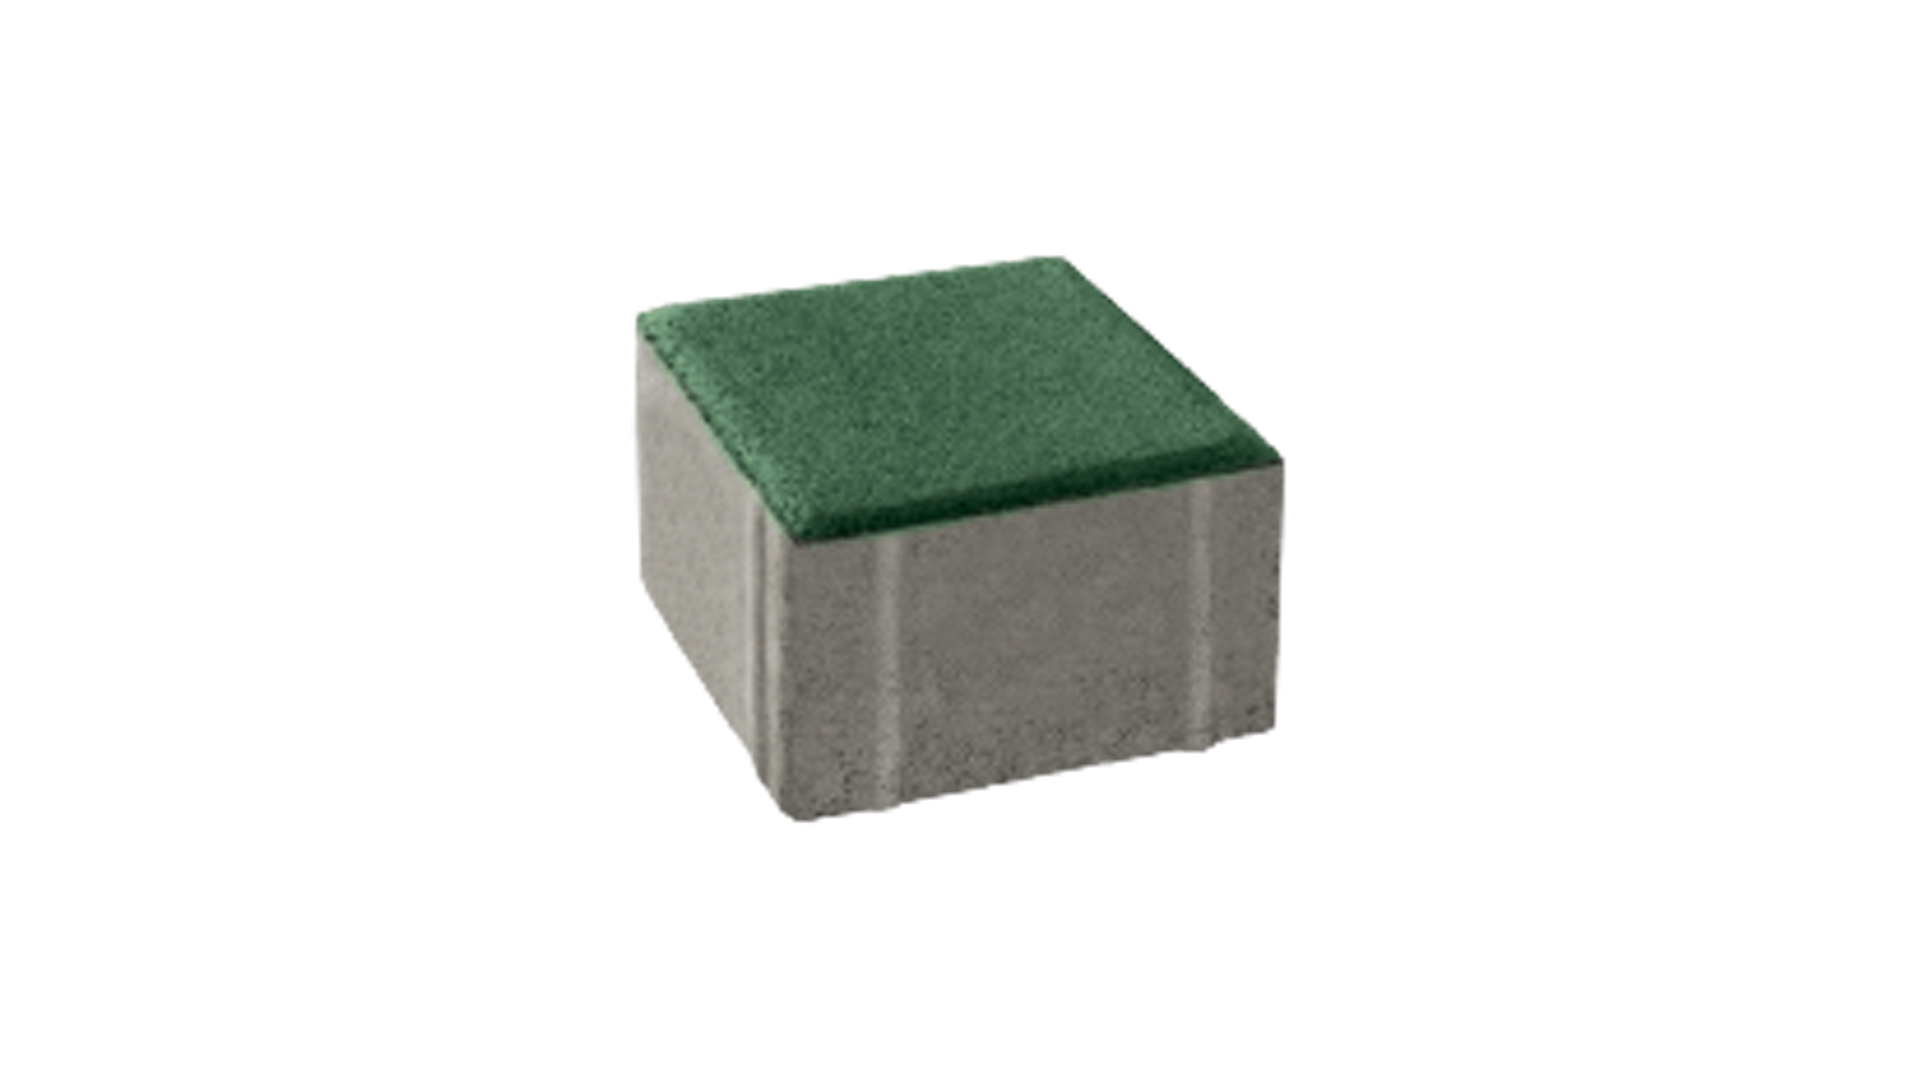 บล็อกปูพื้น เอสซีจี รุ่น ศิลาเหลี่ยม คูลพลัส ขนาด 10 X 10 X 6 ซม.(8 ก้อนต่อห่อ) สีเขียว